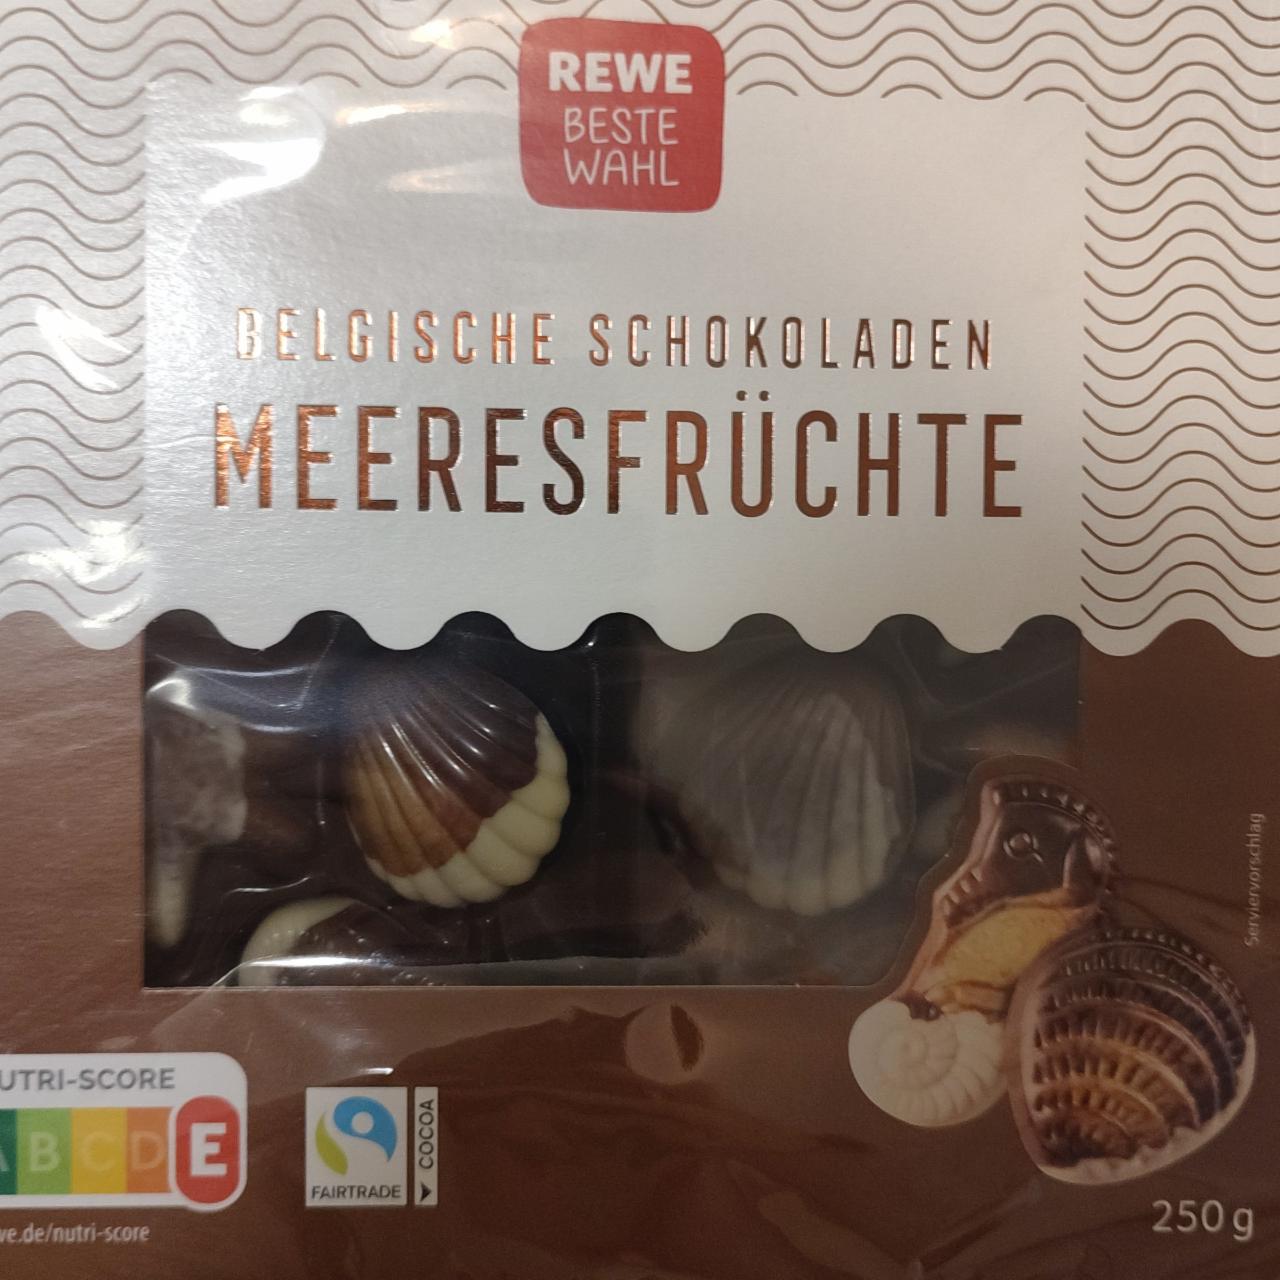 Фото - Belgische Schokoladen Meeresfrüchte Rewe beste wahl